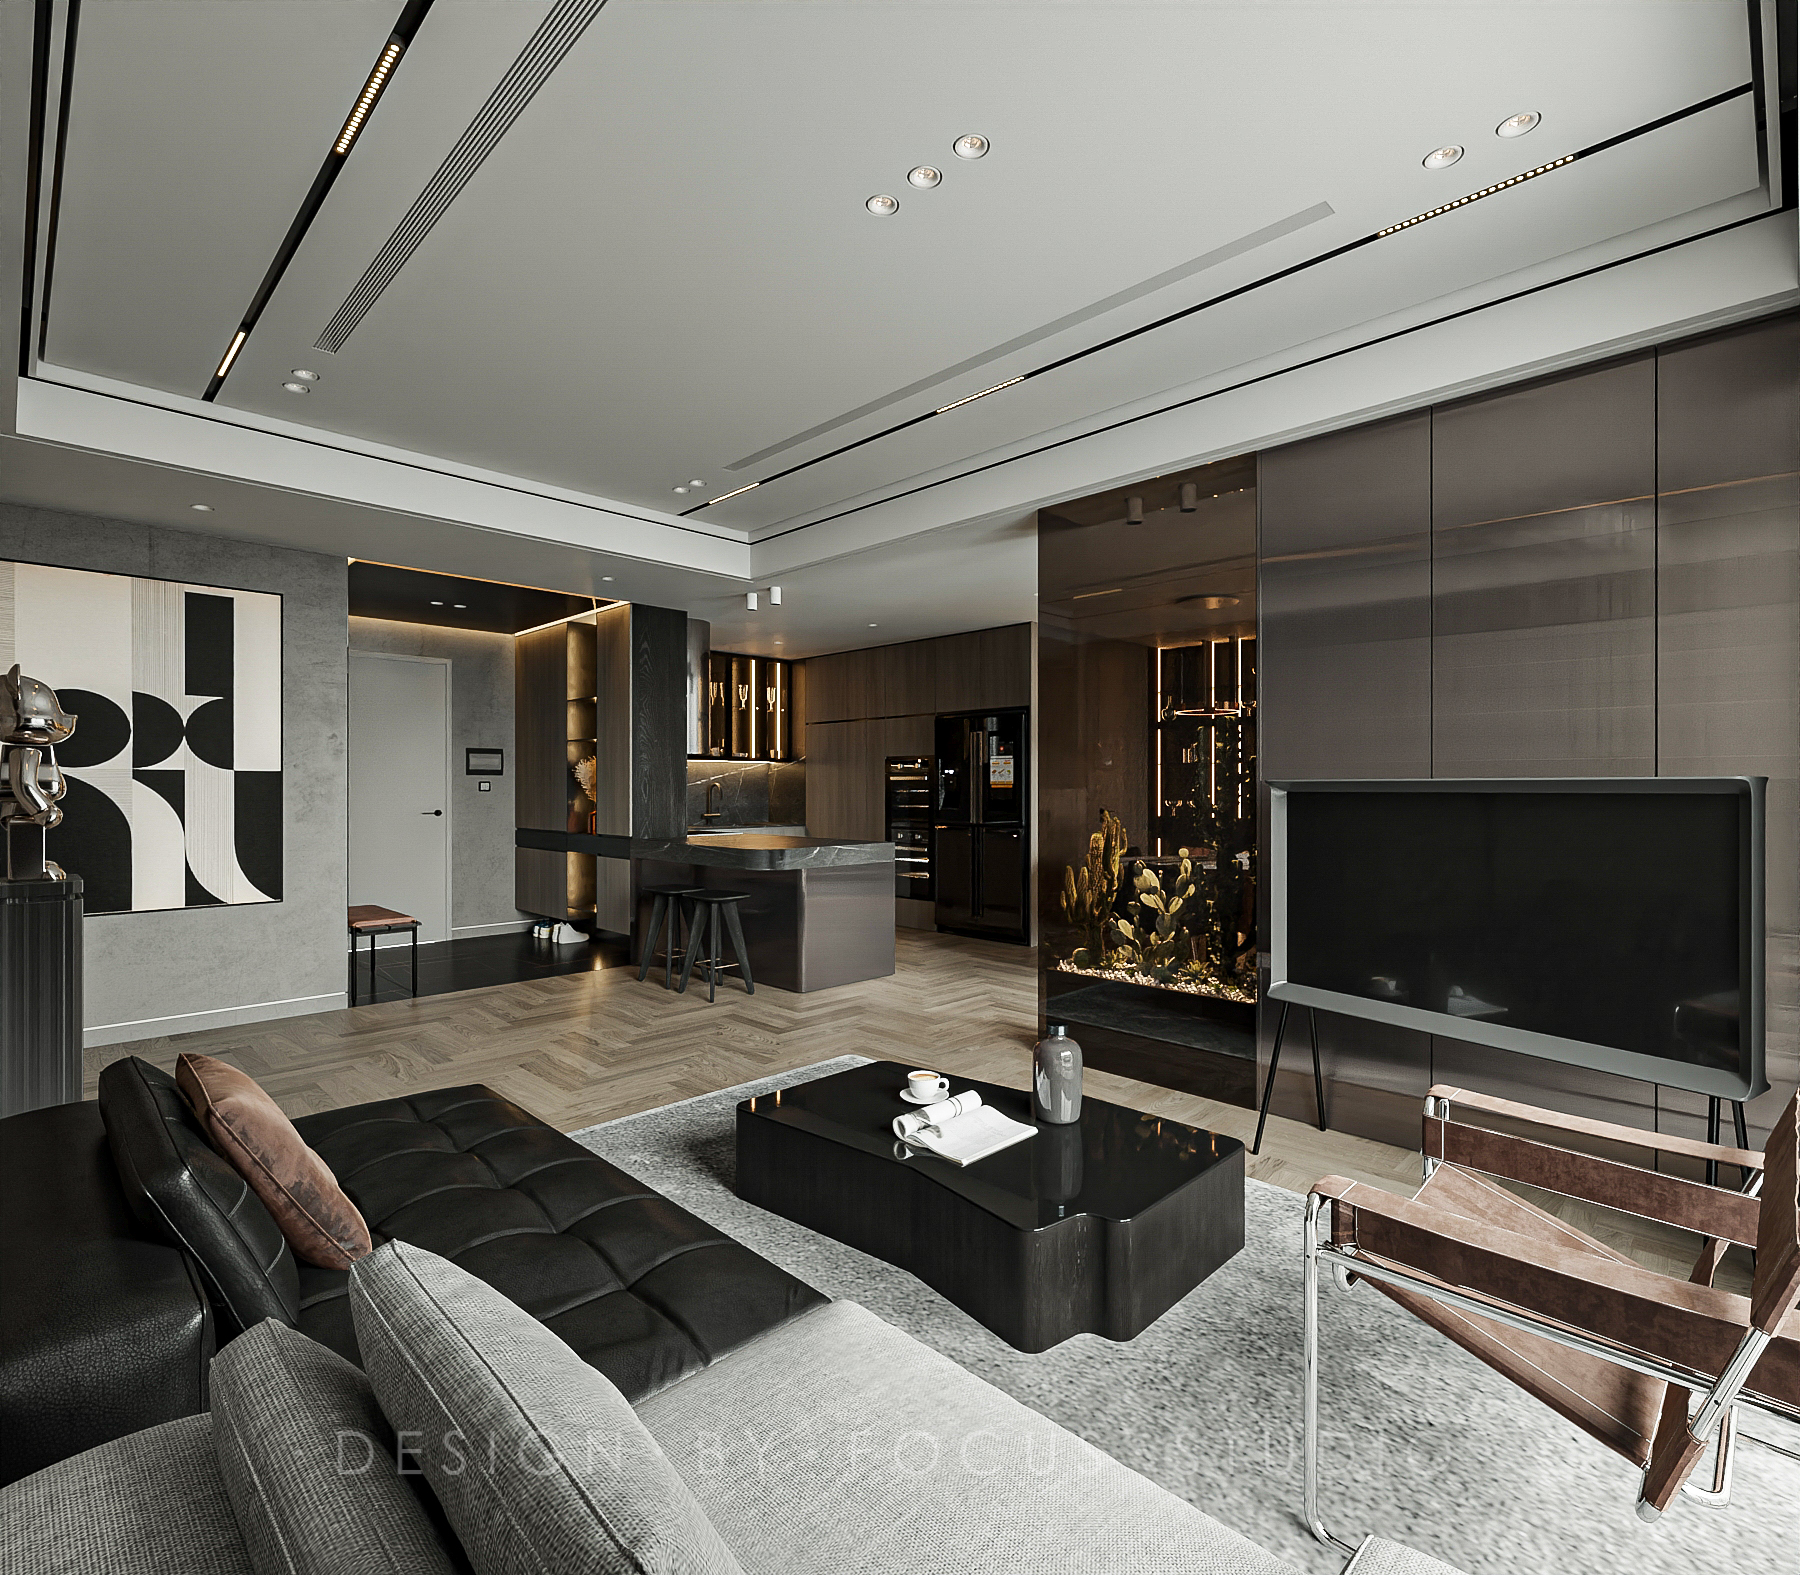 free living room 3d models for download